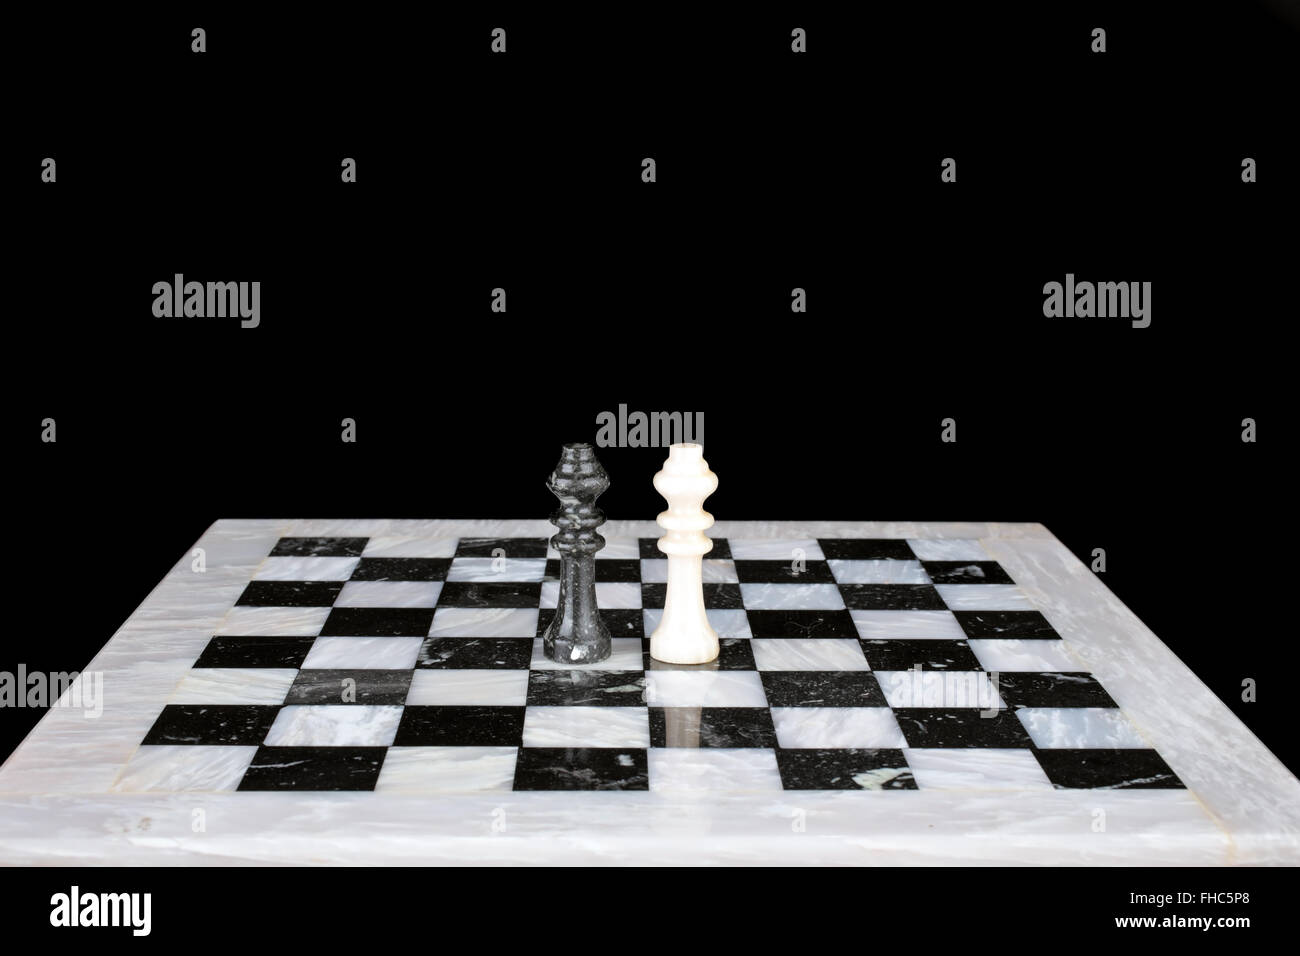 El ajedrez, juego de reyes de la Edad Media